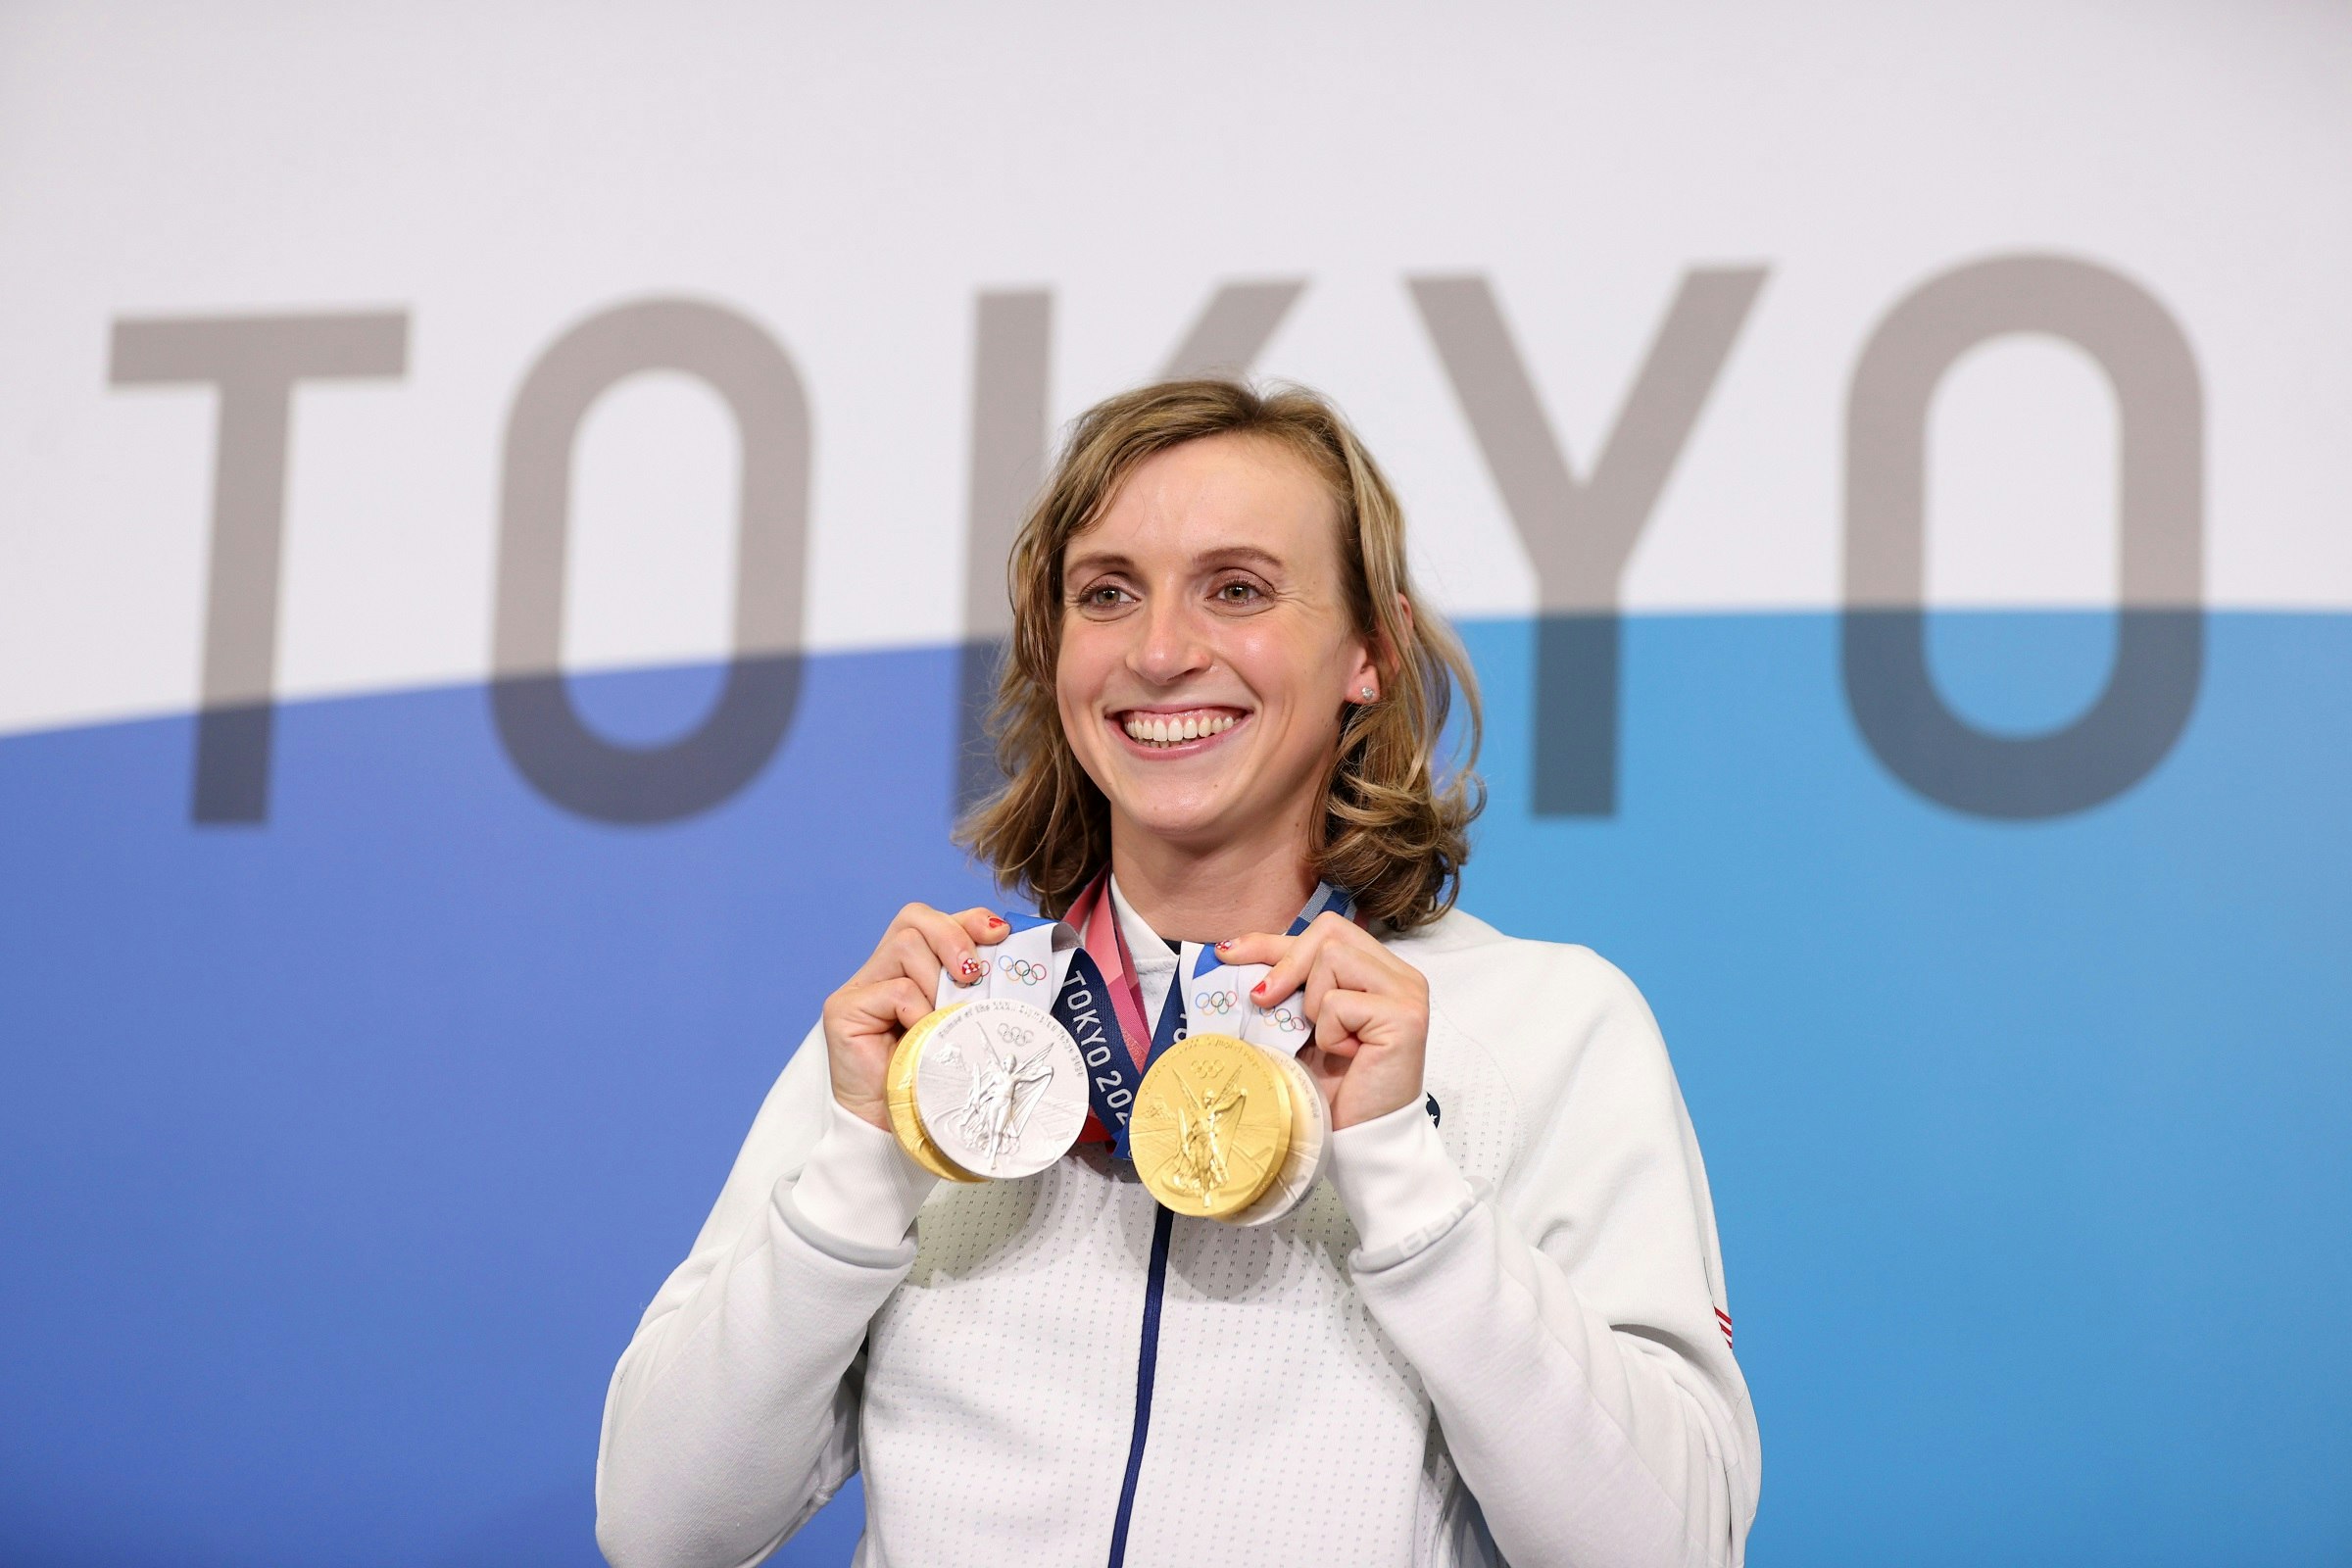 Igrzyska olimpijskie Tokio - Katie Ledecky